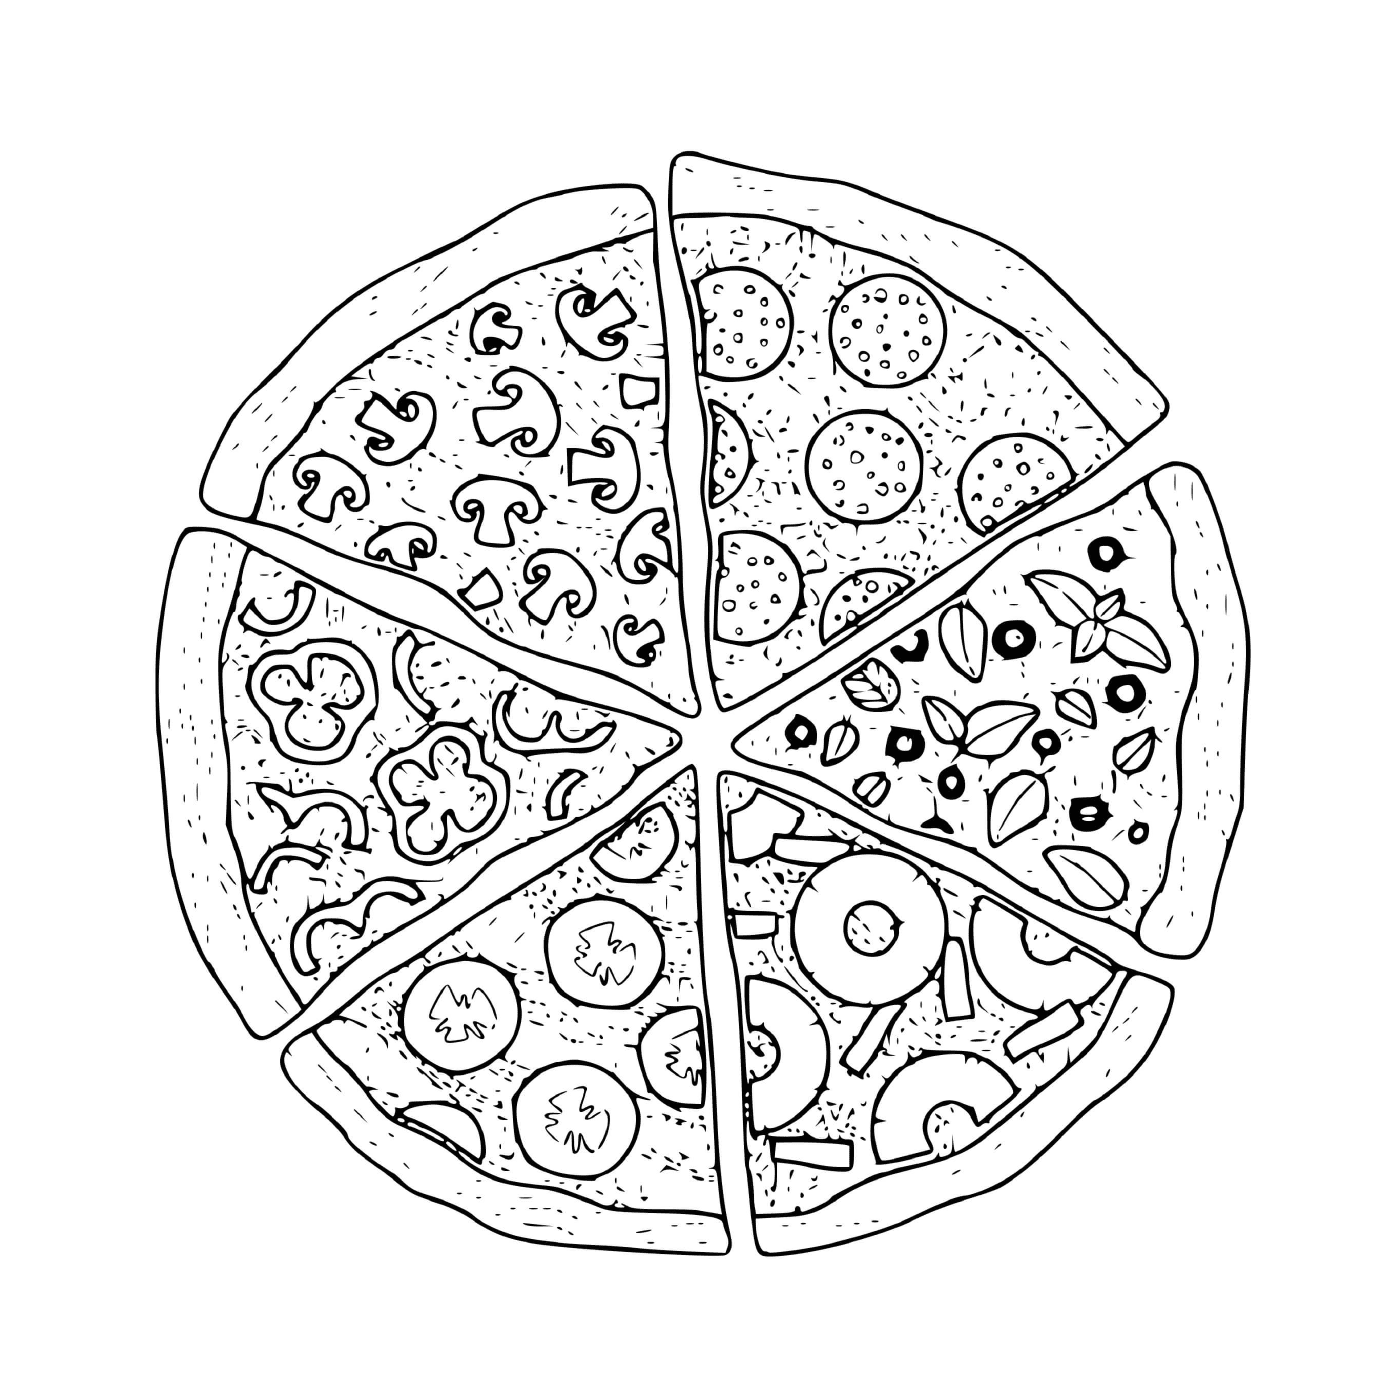  Varios cortes de pizza 